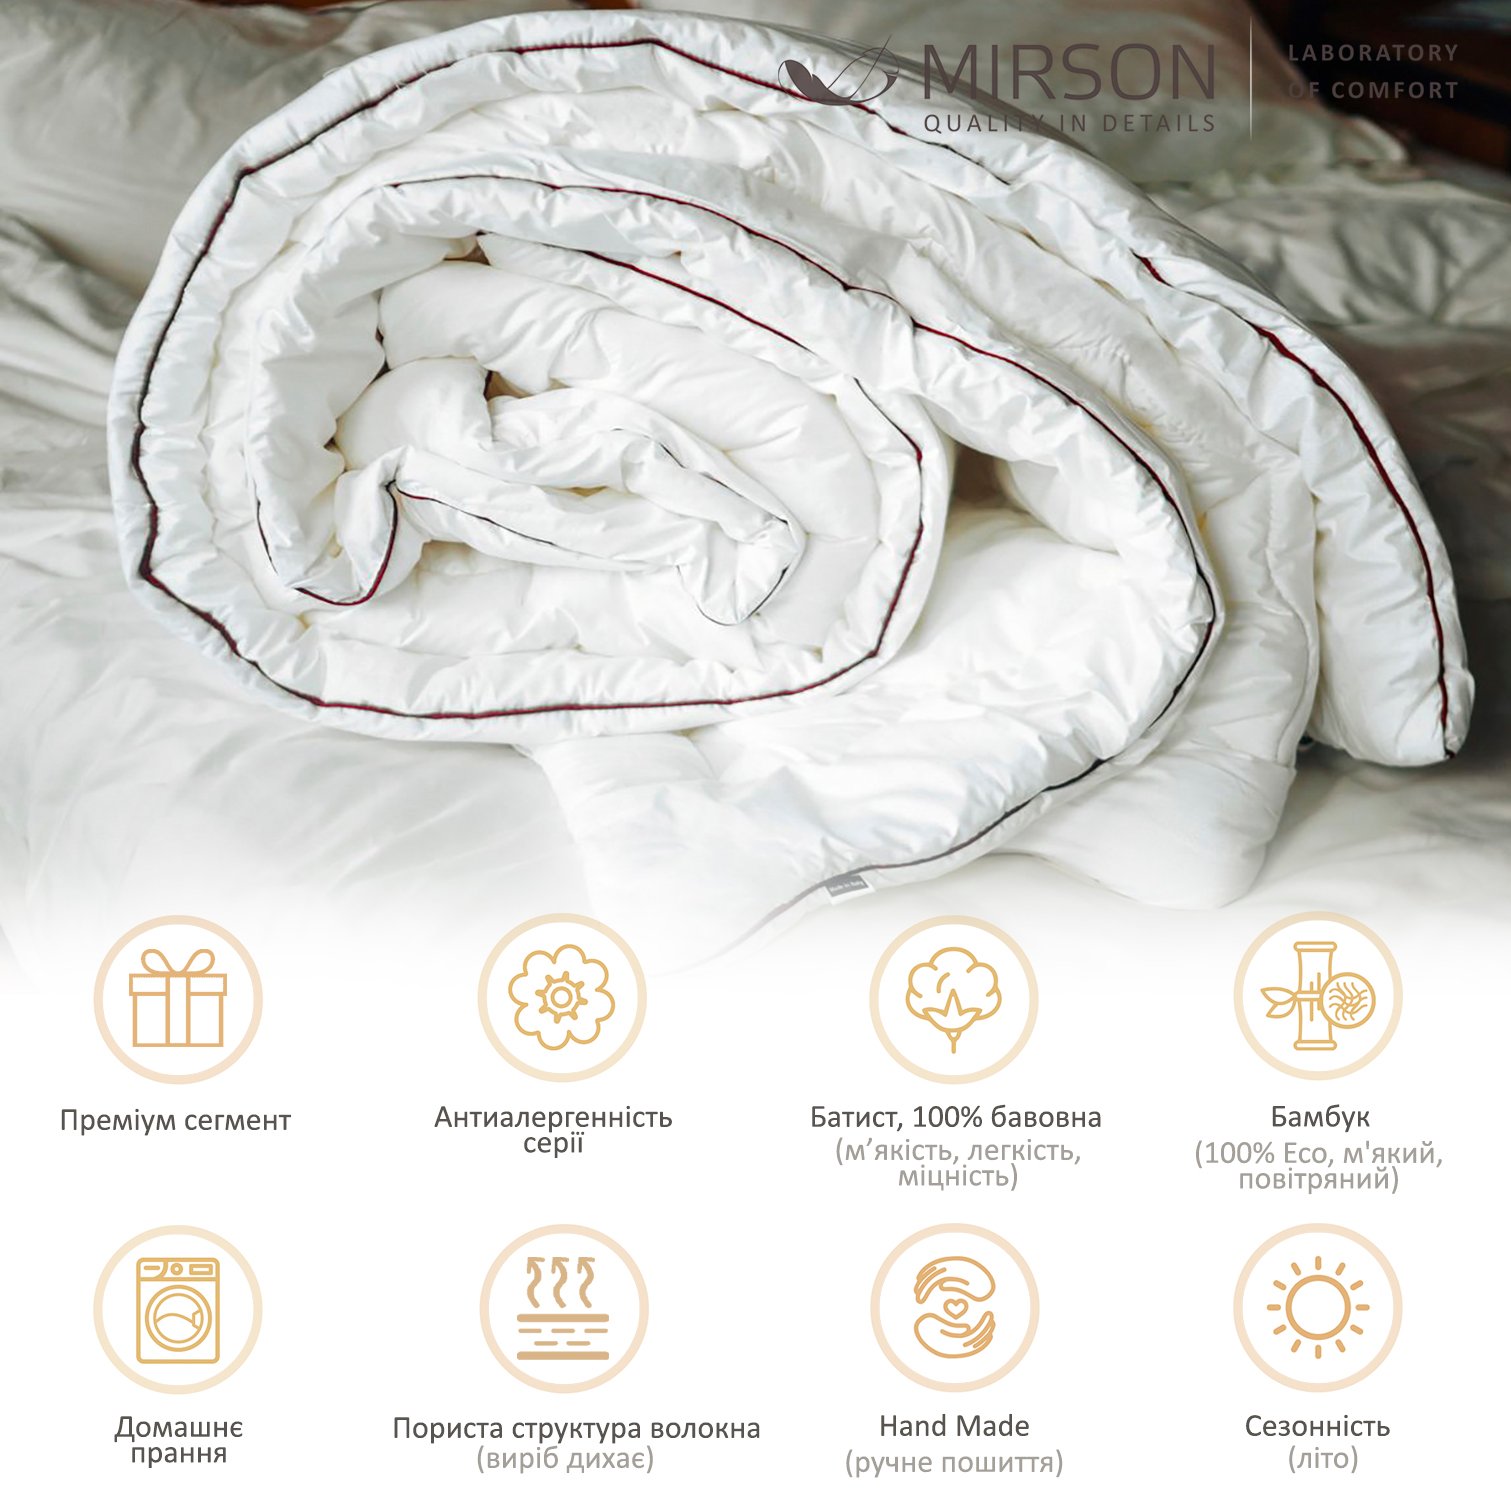 Одеяло бамбуковое MirSon Deluxe Hand Made №0444, летнее, 110x140 см, белое - фото 5